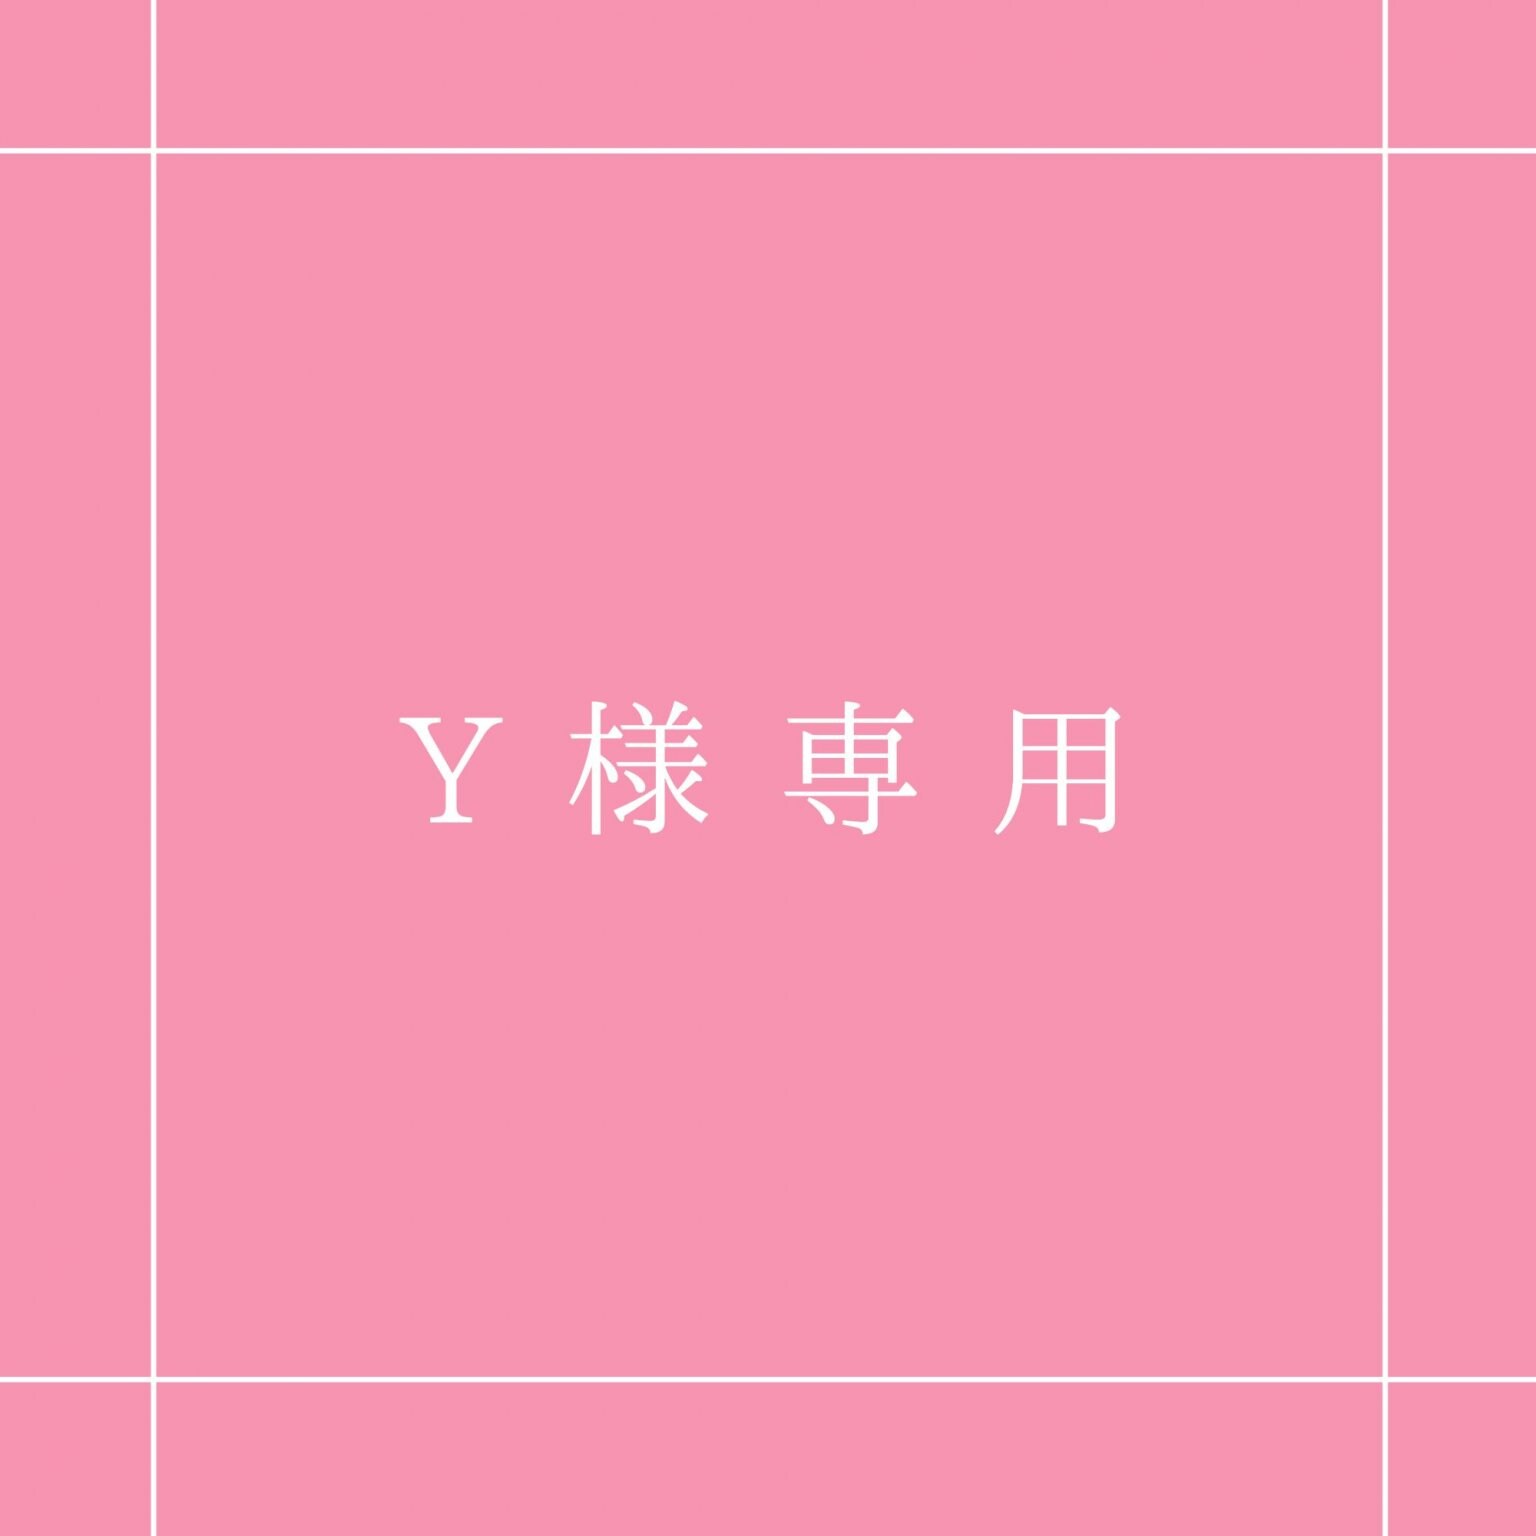 Y様 専用チケット【銀行振込】 - 医療エステ女神工房/ヤナカセイサクショ